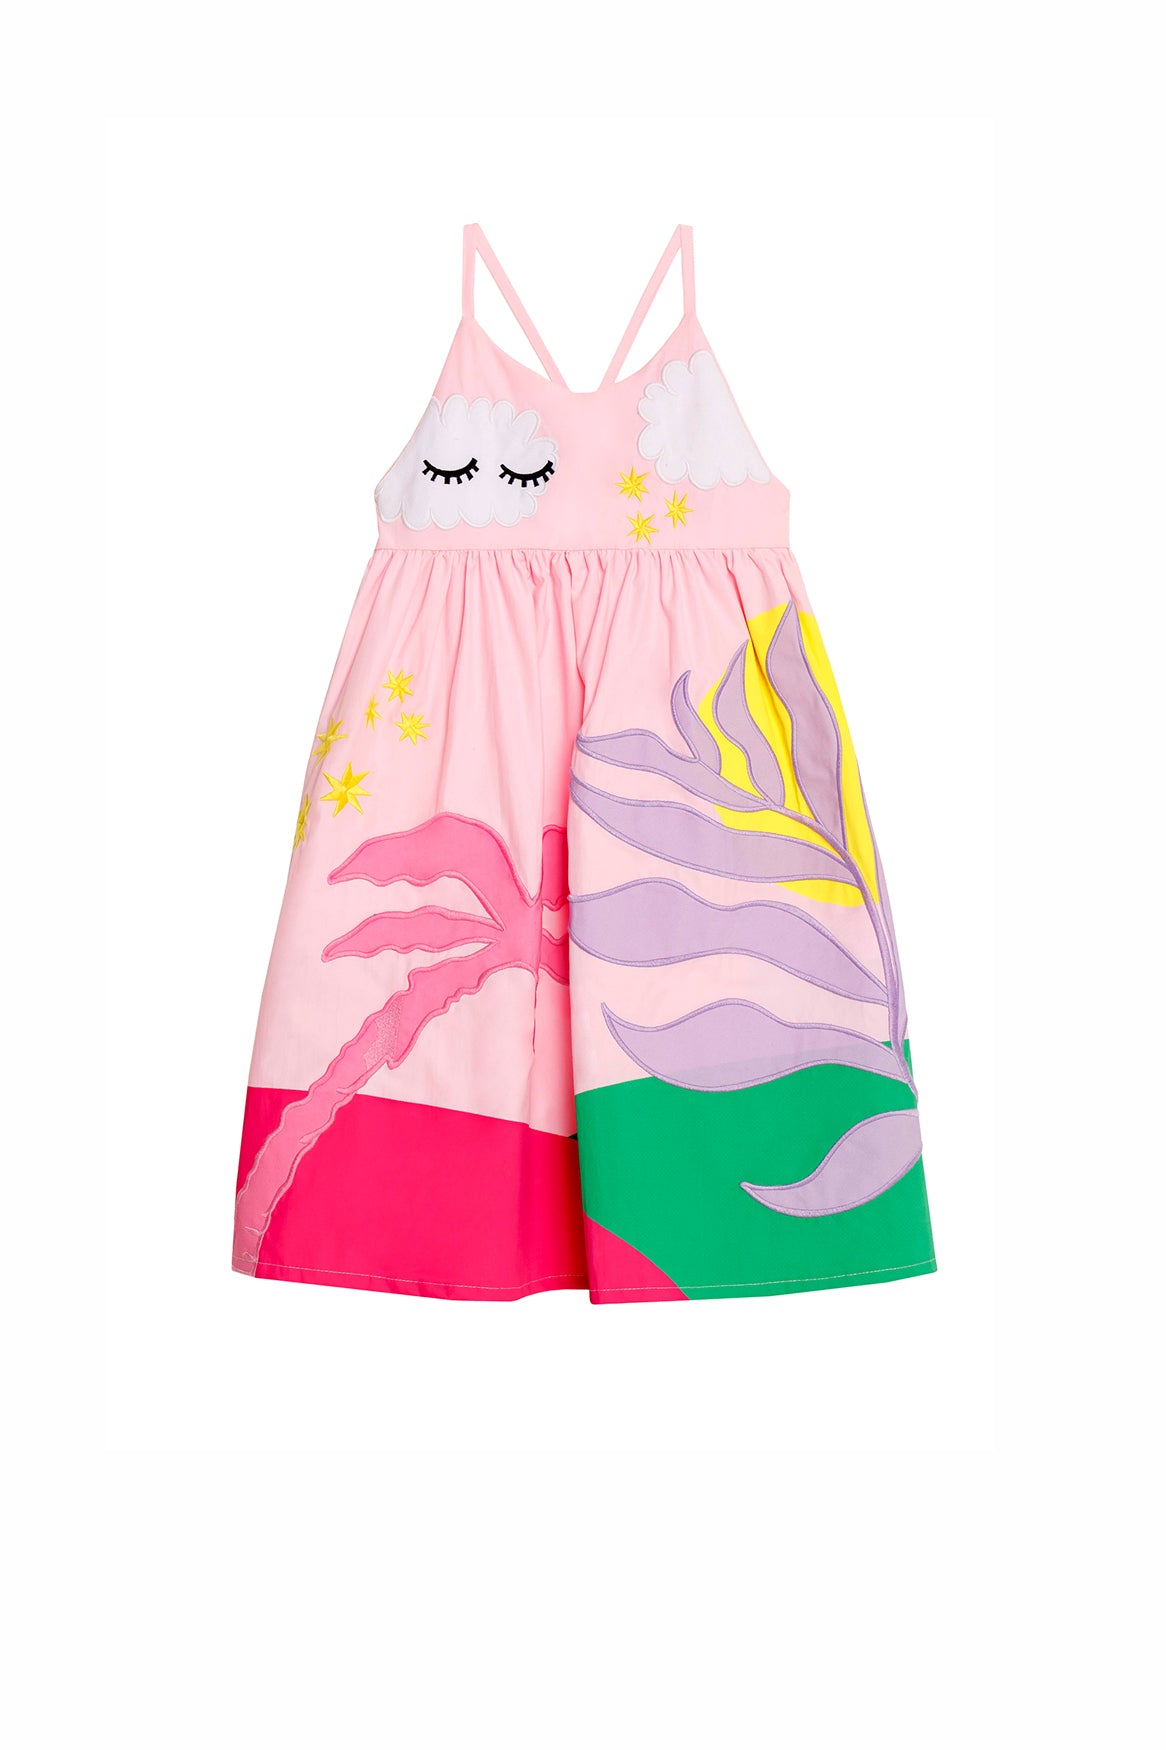 Capri Joo Bah 10259 - Kids Dress